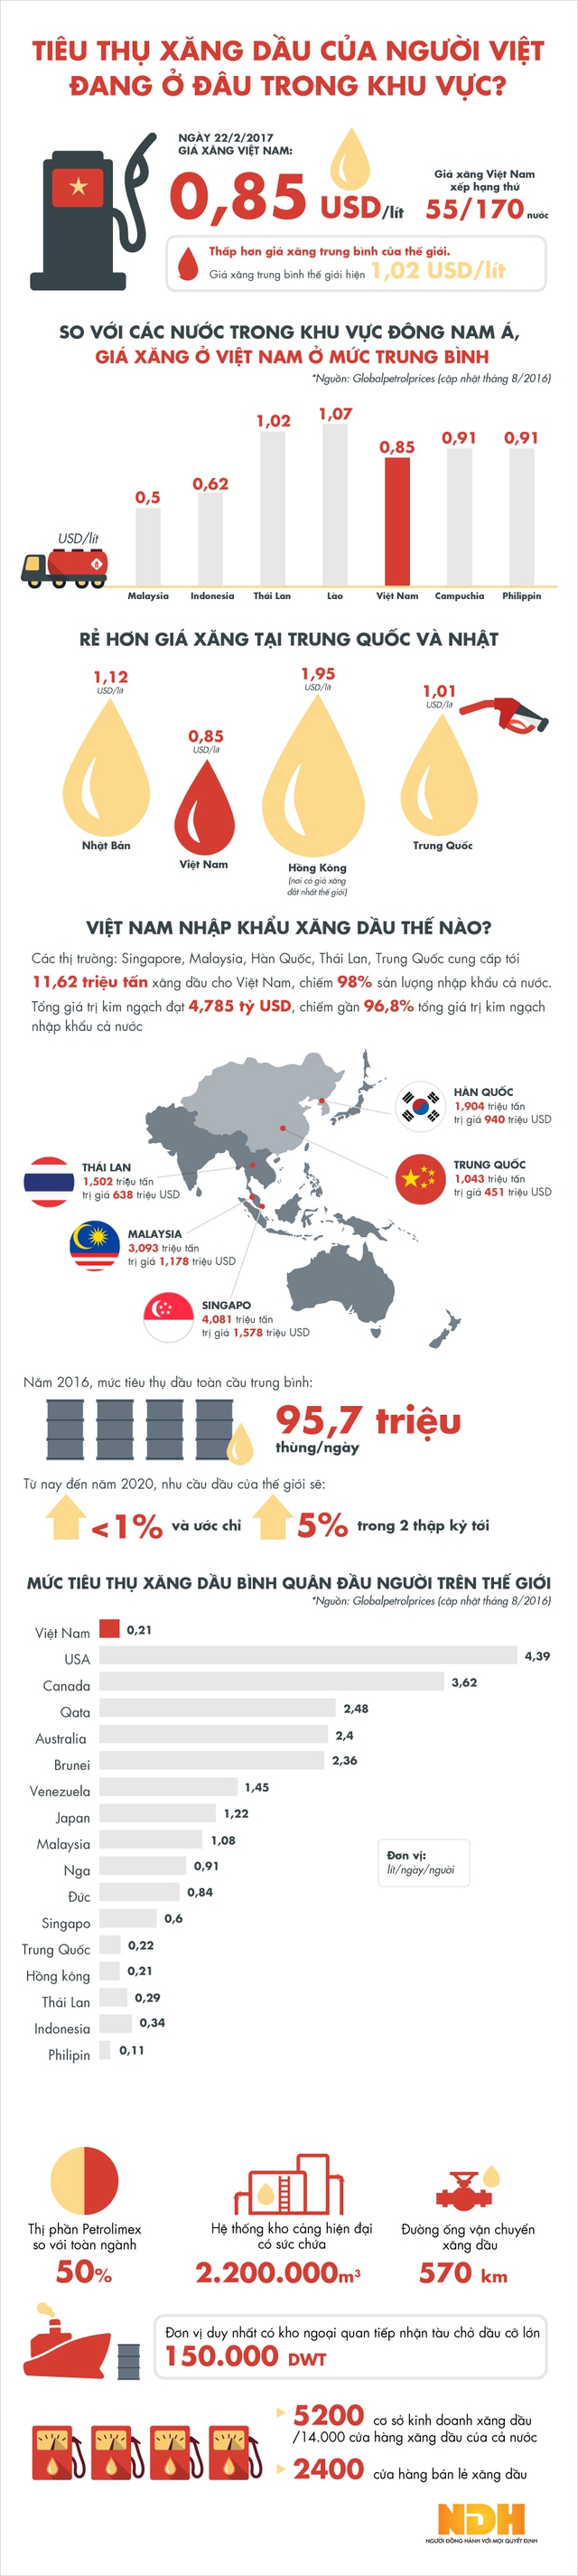 [Infographic] Tiêu thụ xăng dầu của người Việt đang ở đâu trong khu vực? - Ảnh 1.